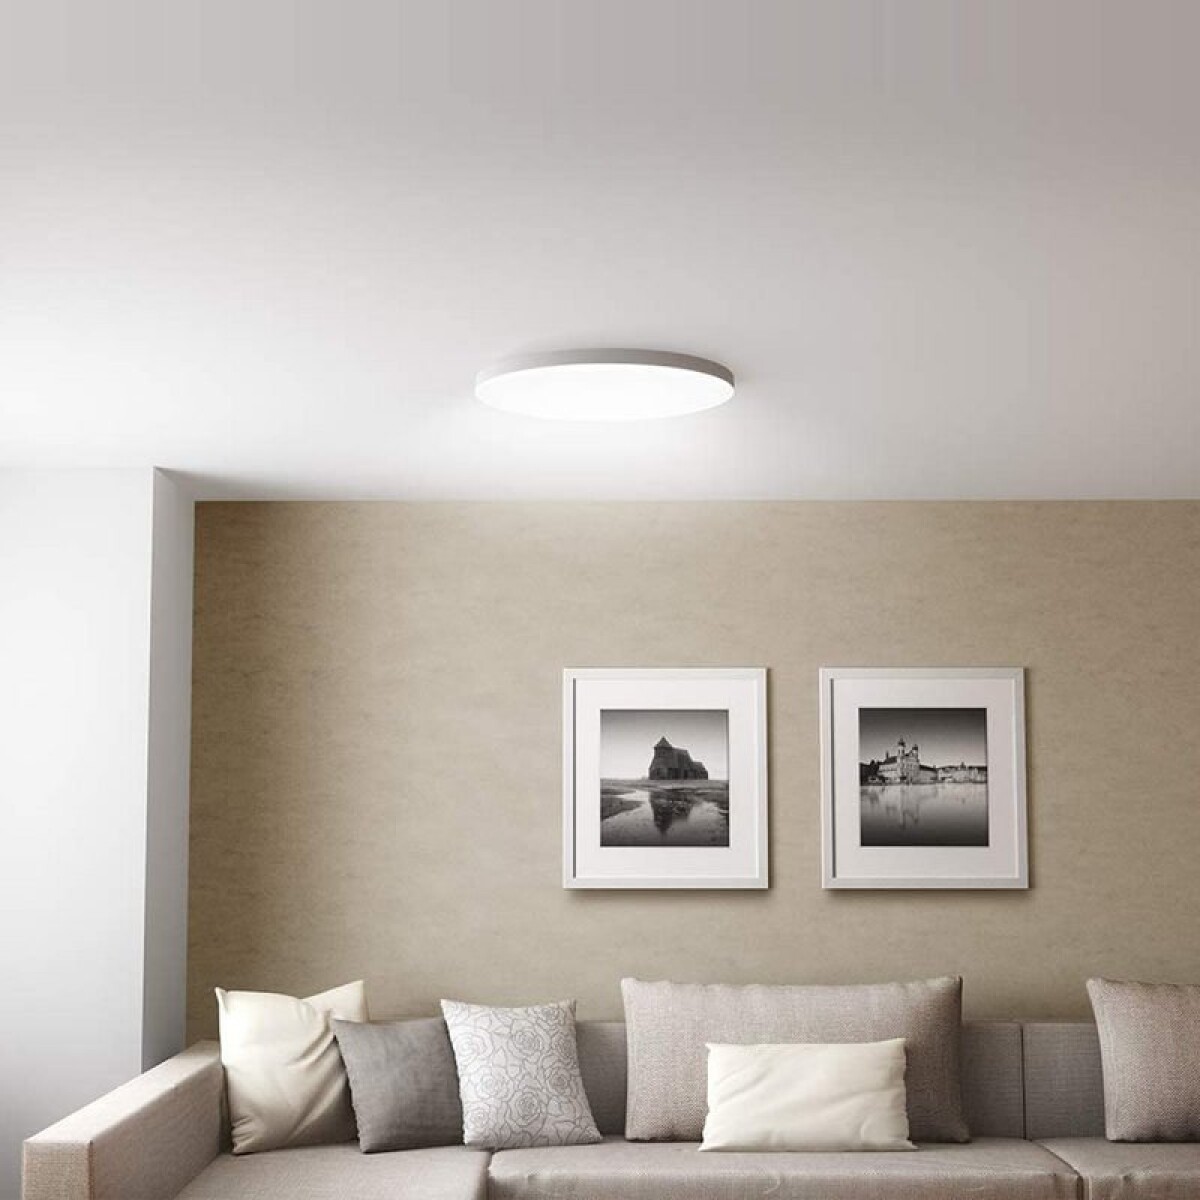 Mi smart led ceiling light (450mm) white White